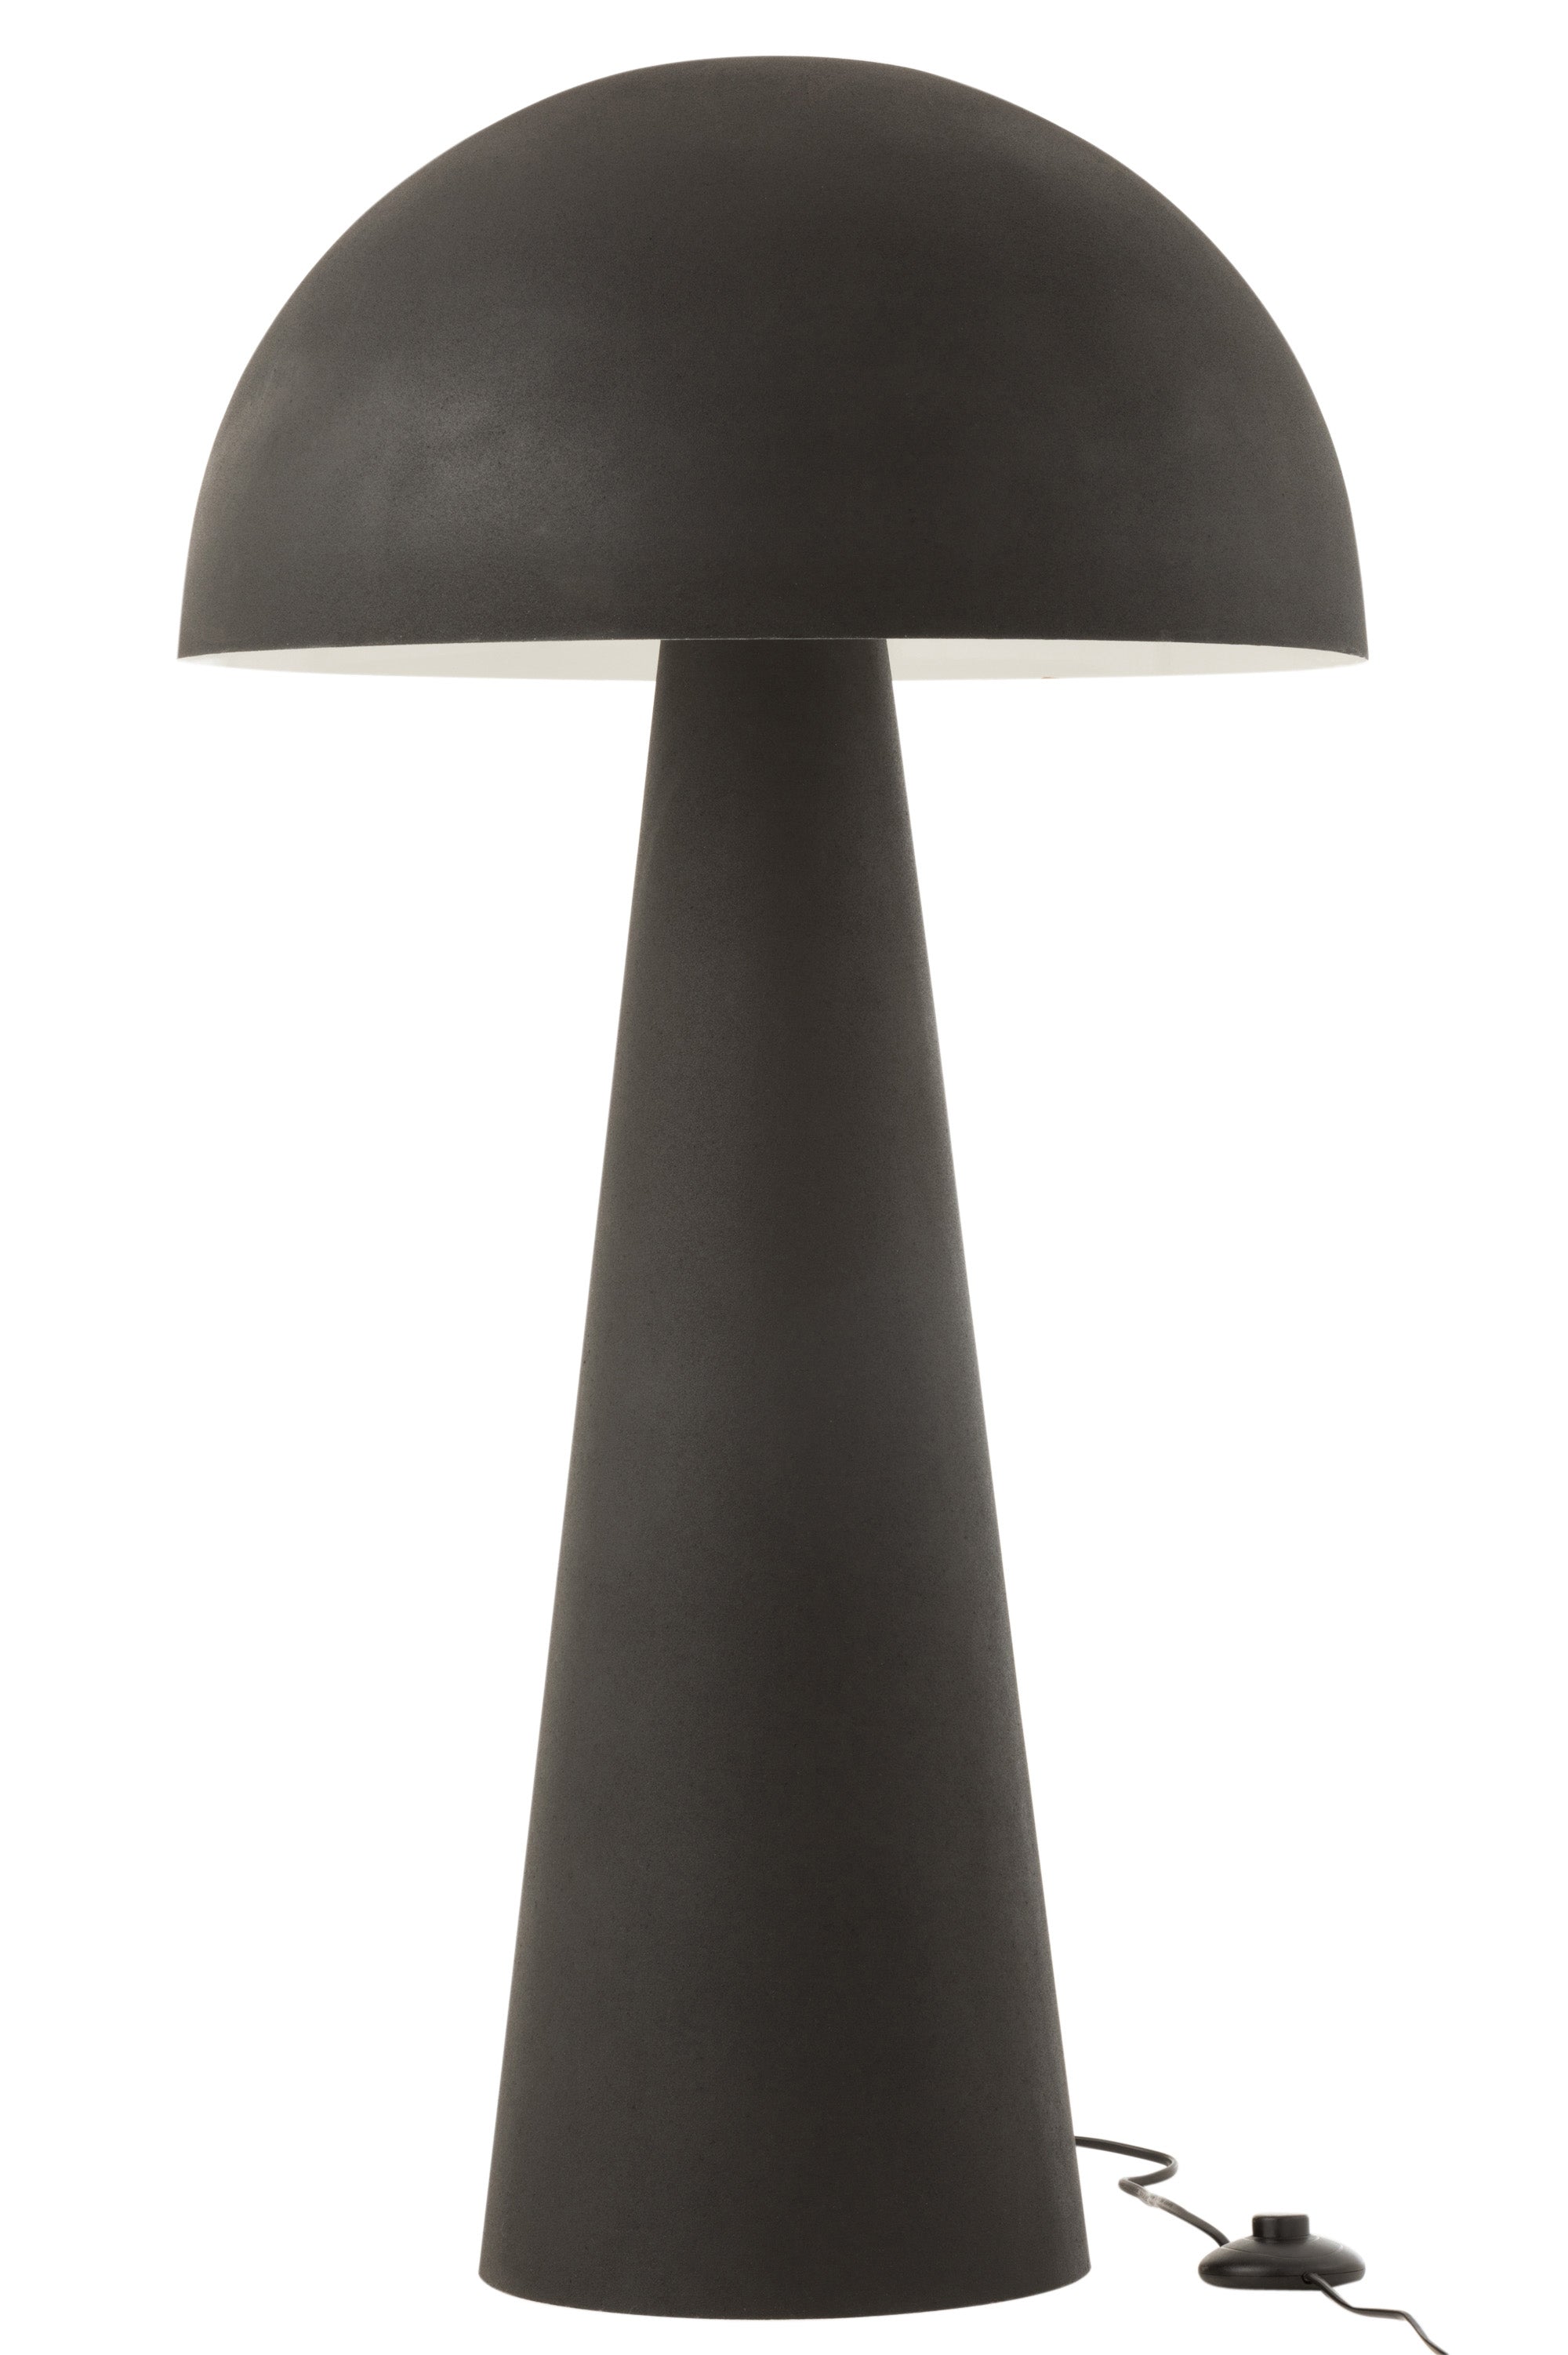 Lampe aus schwarz glänzendem Metall (95 cm hoch) im Design eines Pilzes; auf einem konisch zulaufenden Sockel ruht ein pilzartiger Schirm; mit Fußschalter.